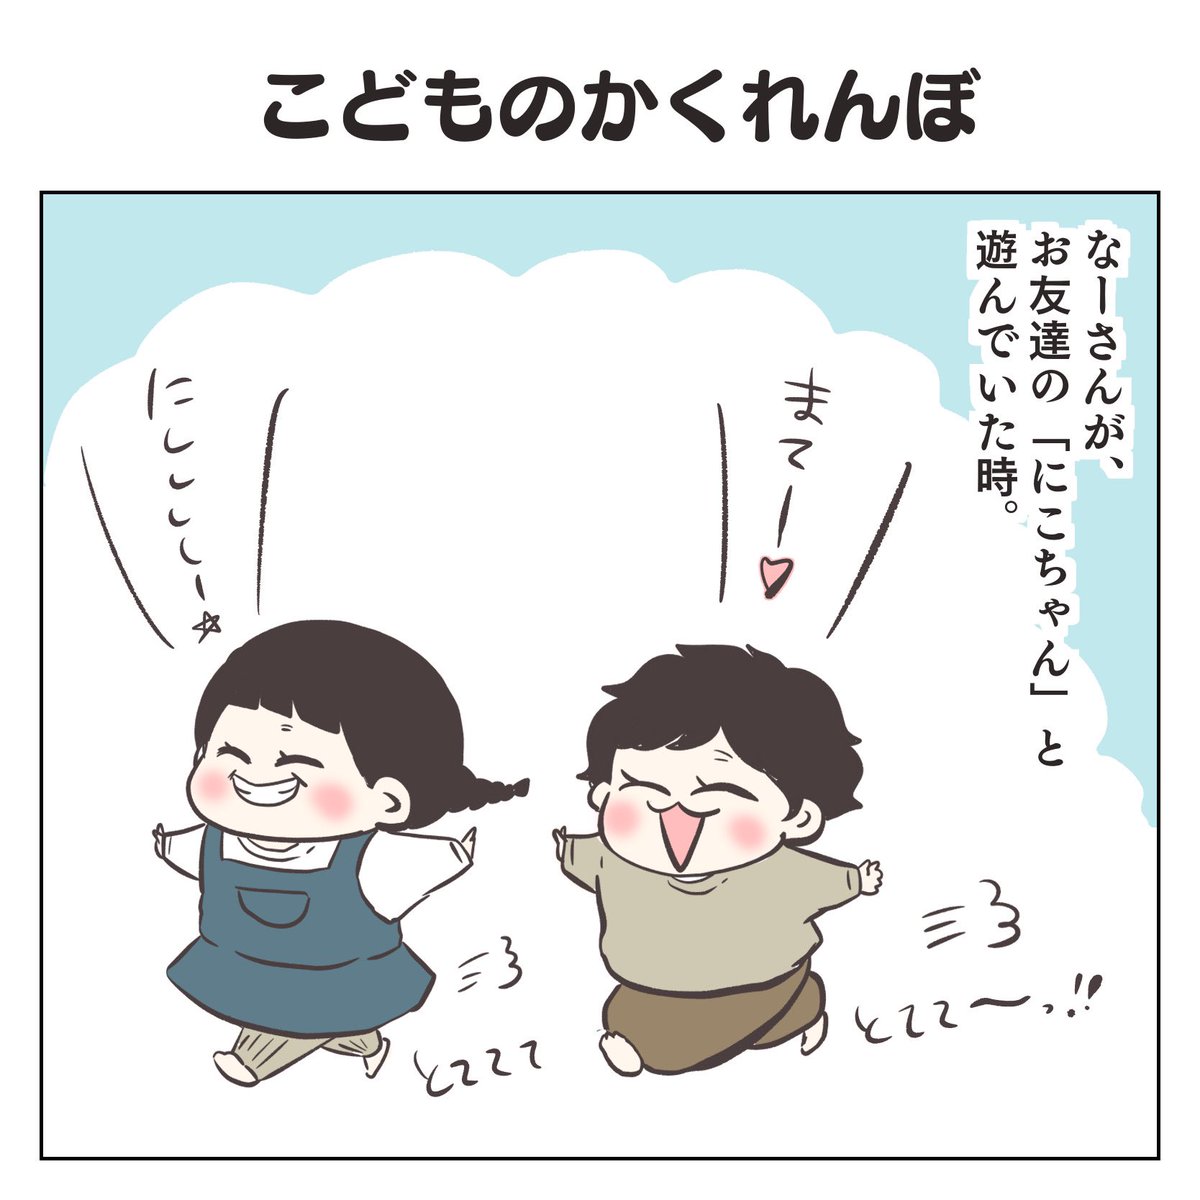 こどものかくれんぼ(1/2)
#育児漫画 #3歳 #過去作 